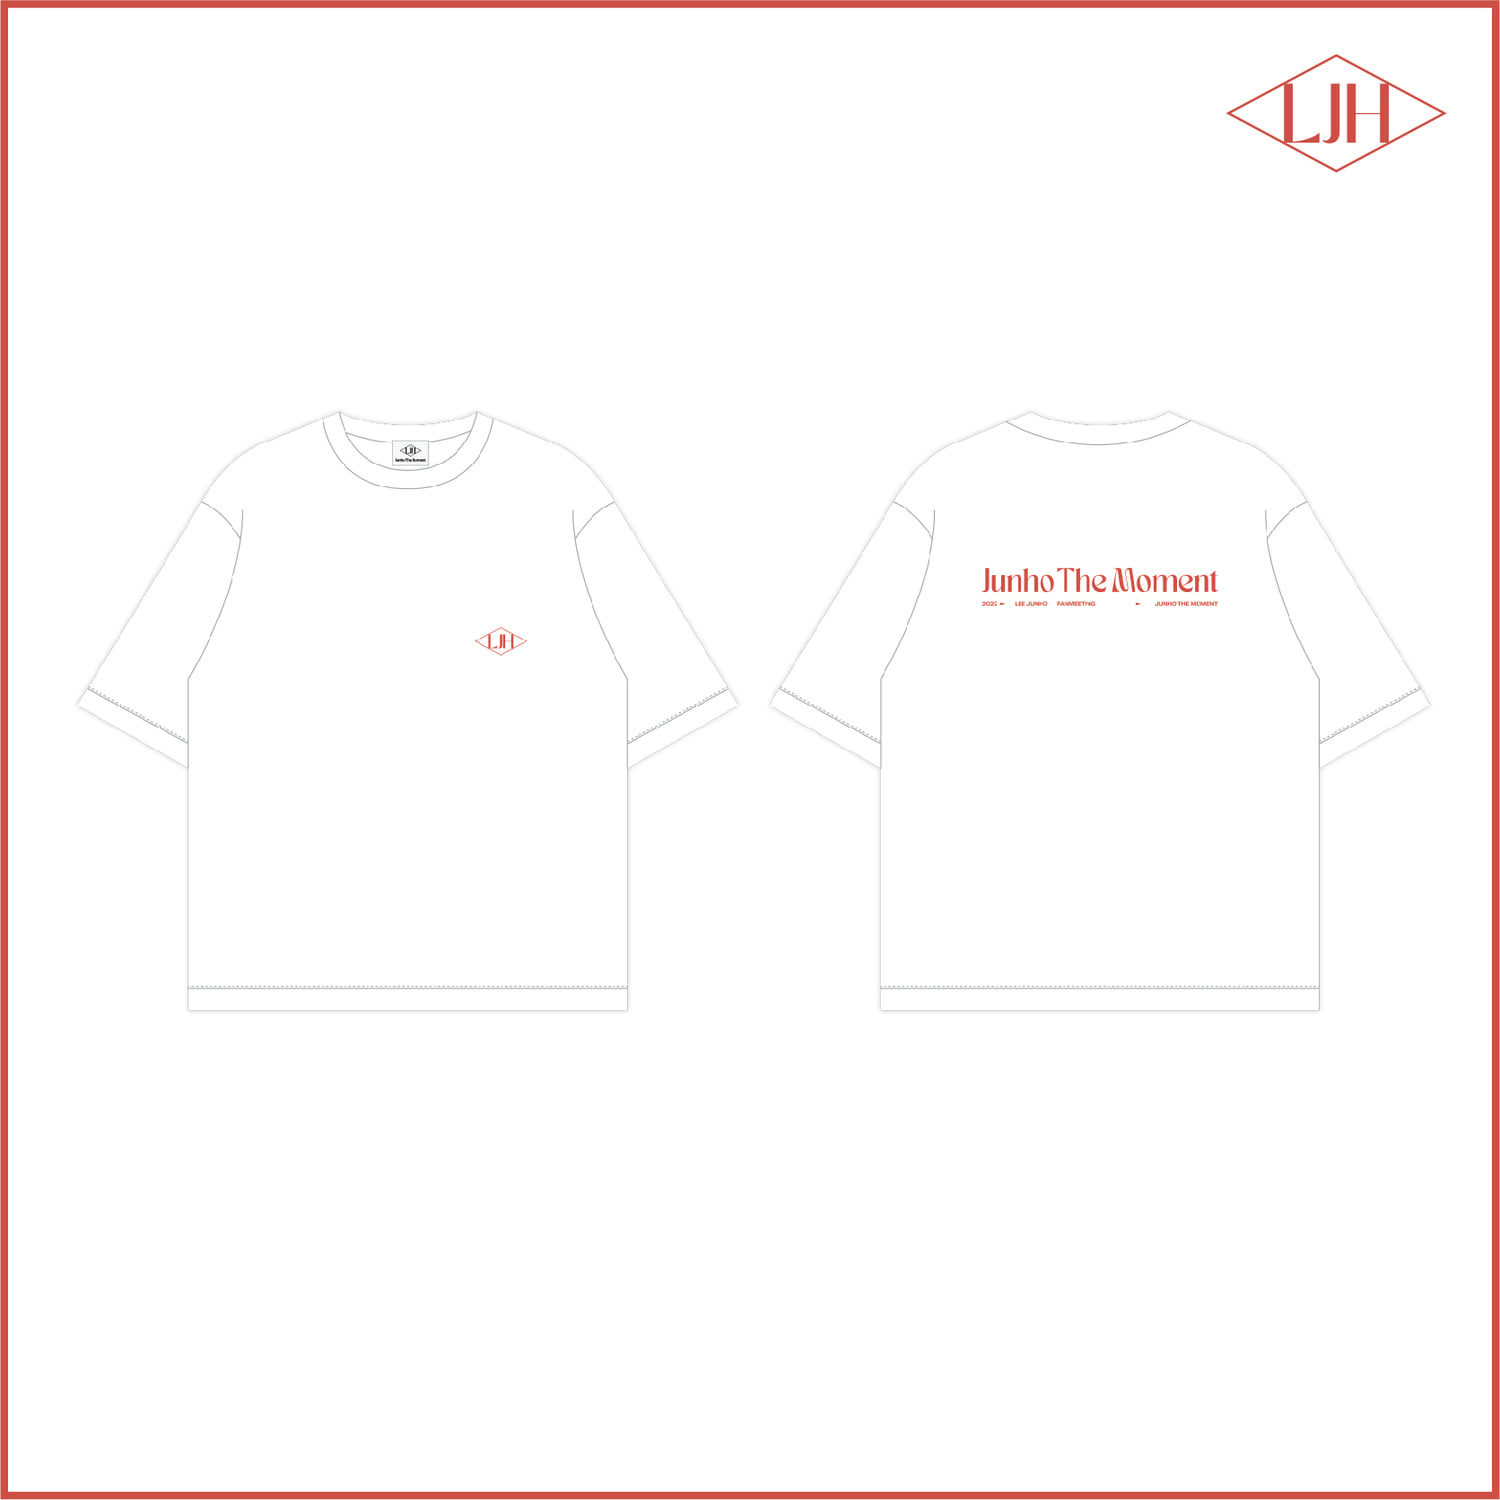 2022 이준호 FANMEETING [JUNHO THE MOMENT] 티셔츠 T-SHIRT